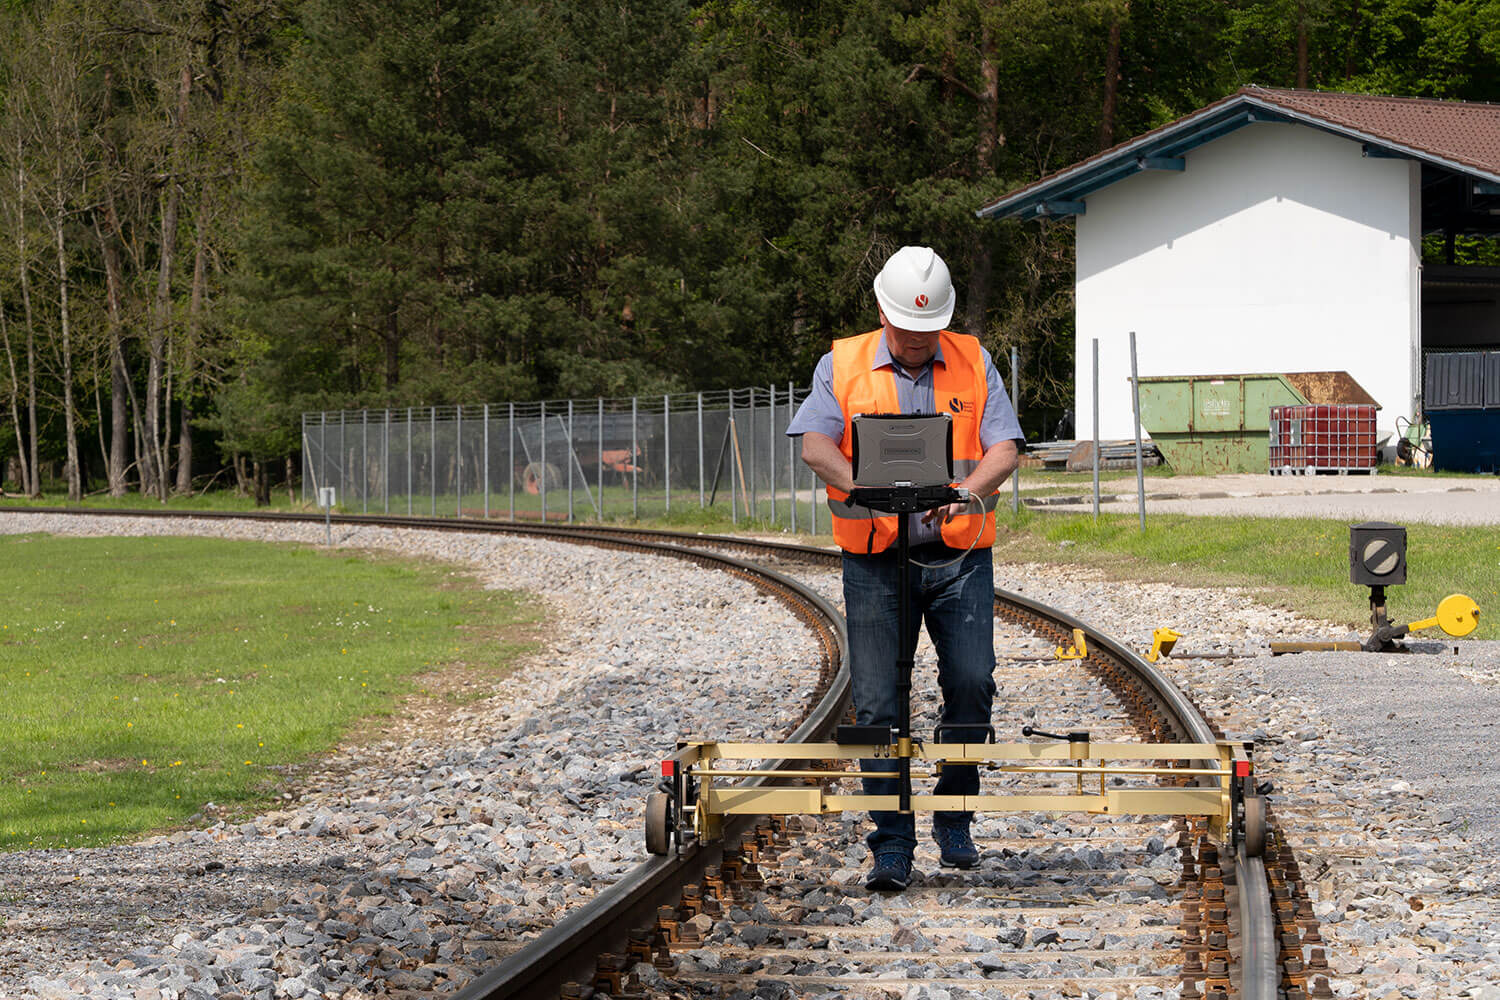 Gleisvermessung an der Anschlussbahn – ein wichtiger Aufgabenbereich des Jobprofiles Bauüberwacher Bahn Oberbau bzw. Fachbauüberwacher Oberbau